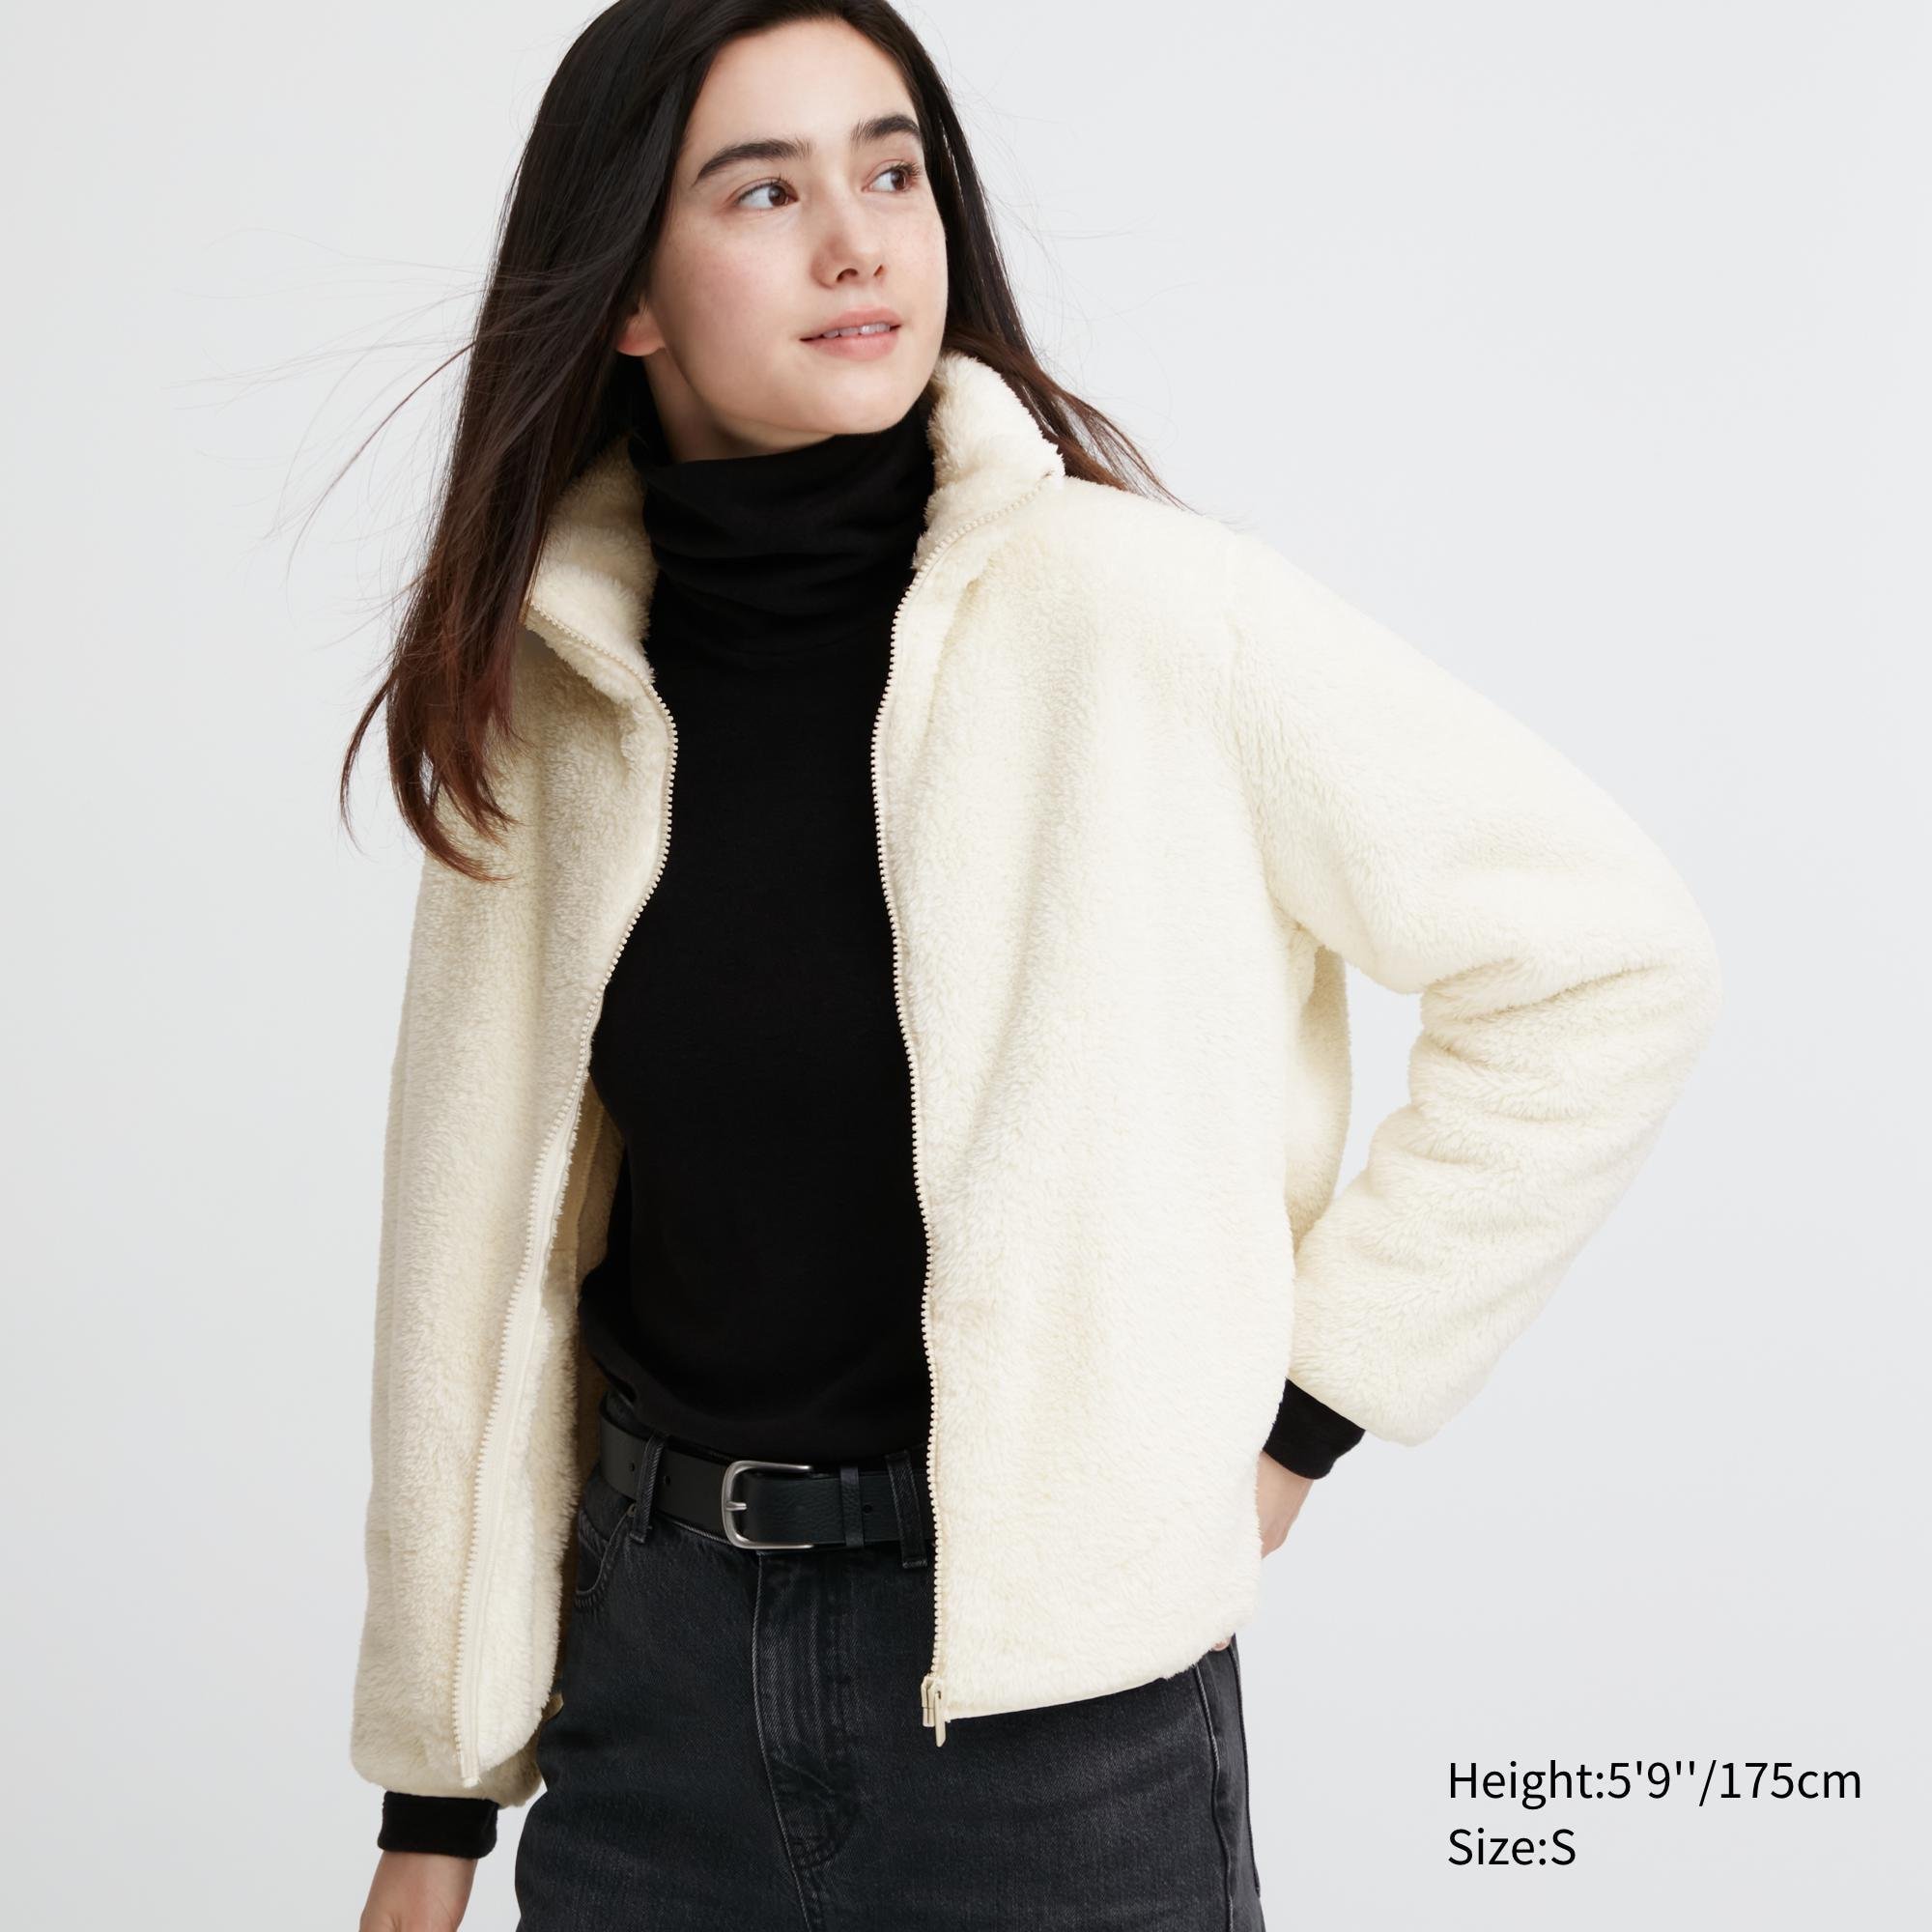 Fluffy Yarn Fleece Full-Zip Jacket by UNIQLO